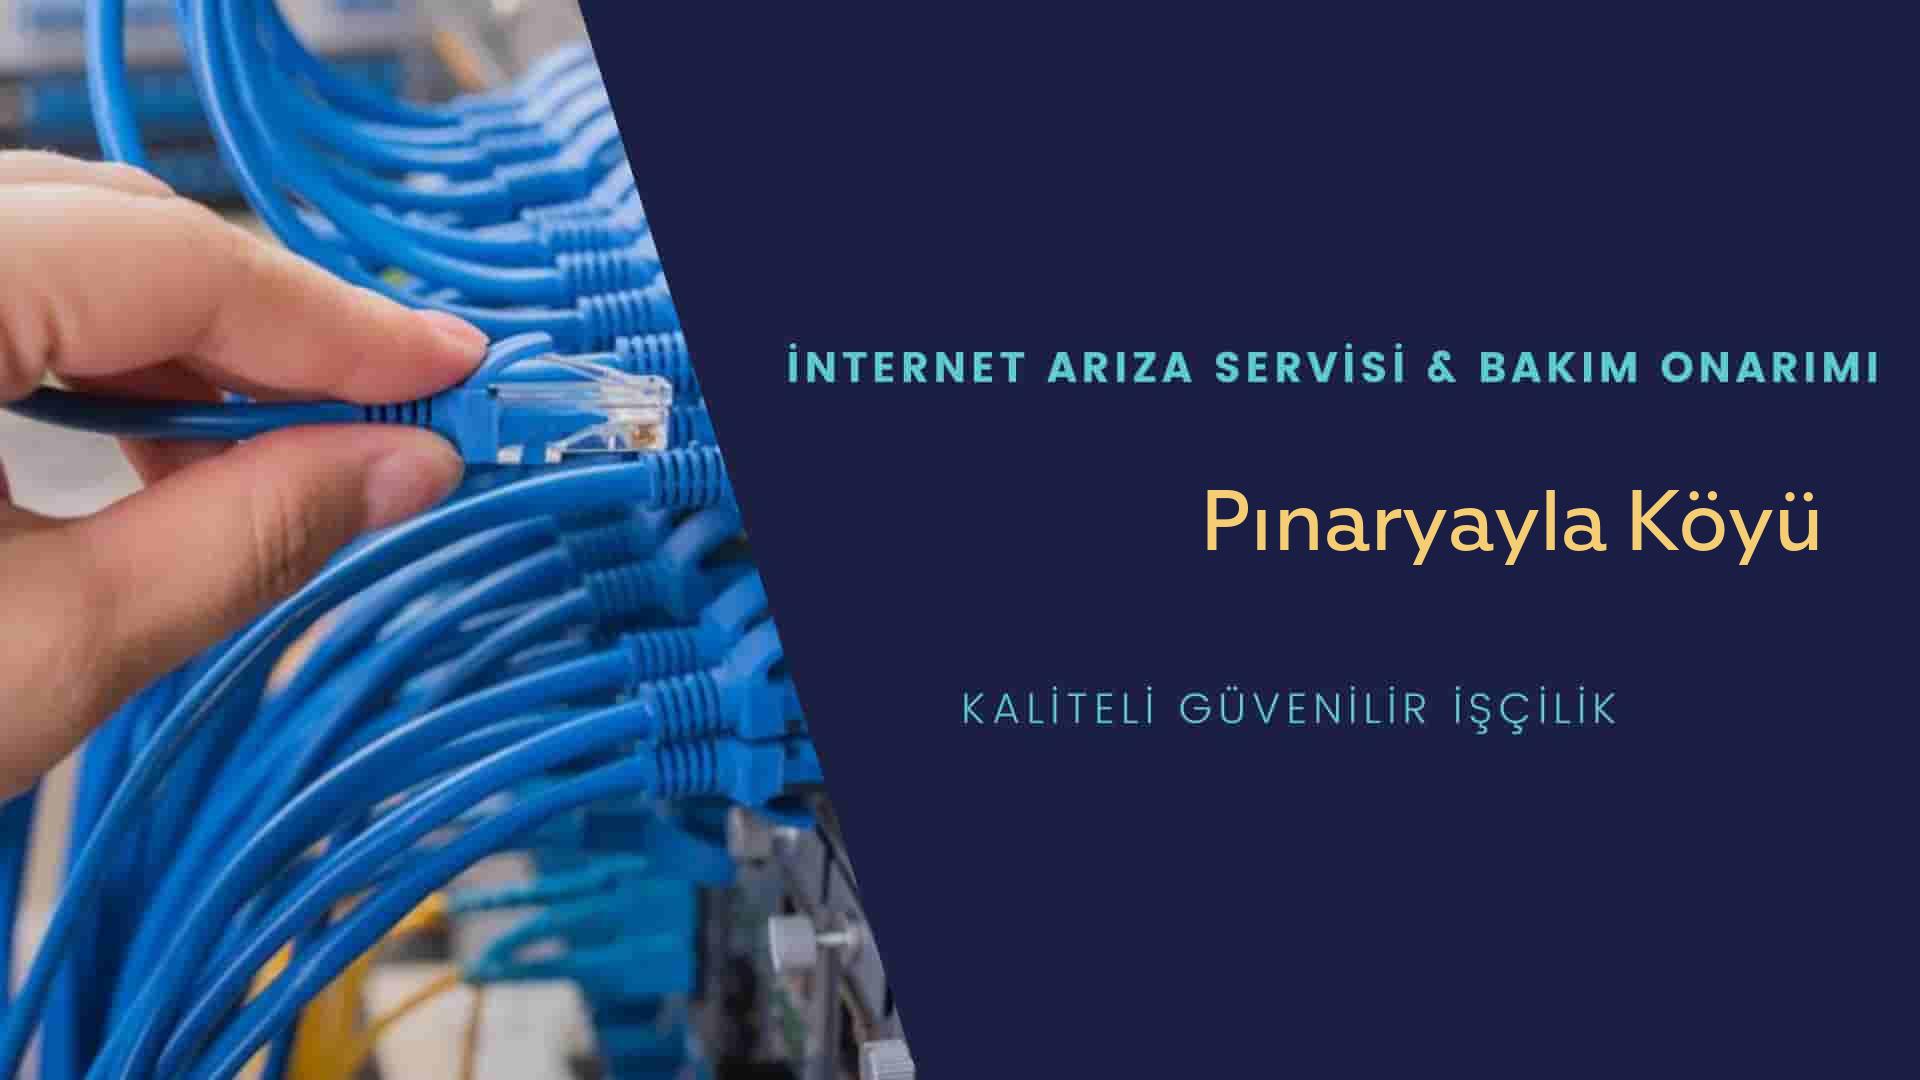 Pınaryayla Köyü internet kablosu çekimi yapan yerler veya elektrikçiler mi? arıyorsunuz doğru yerdesiniz o zaman sizlere 7/24 yardımcı olacak profesyonel ustalarımız bir telefon kadar yakındır size.